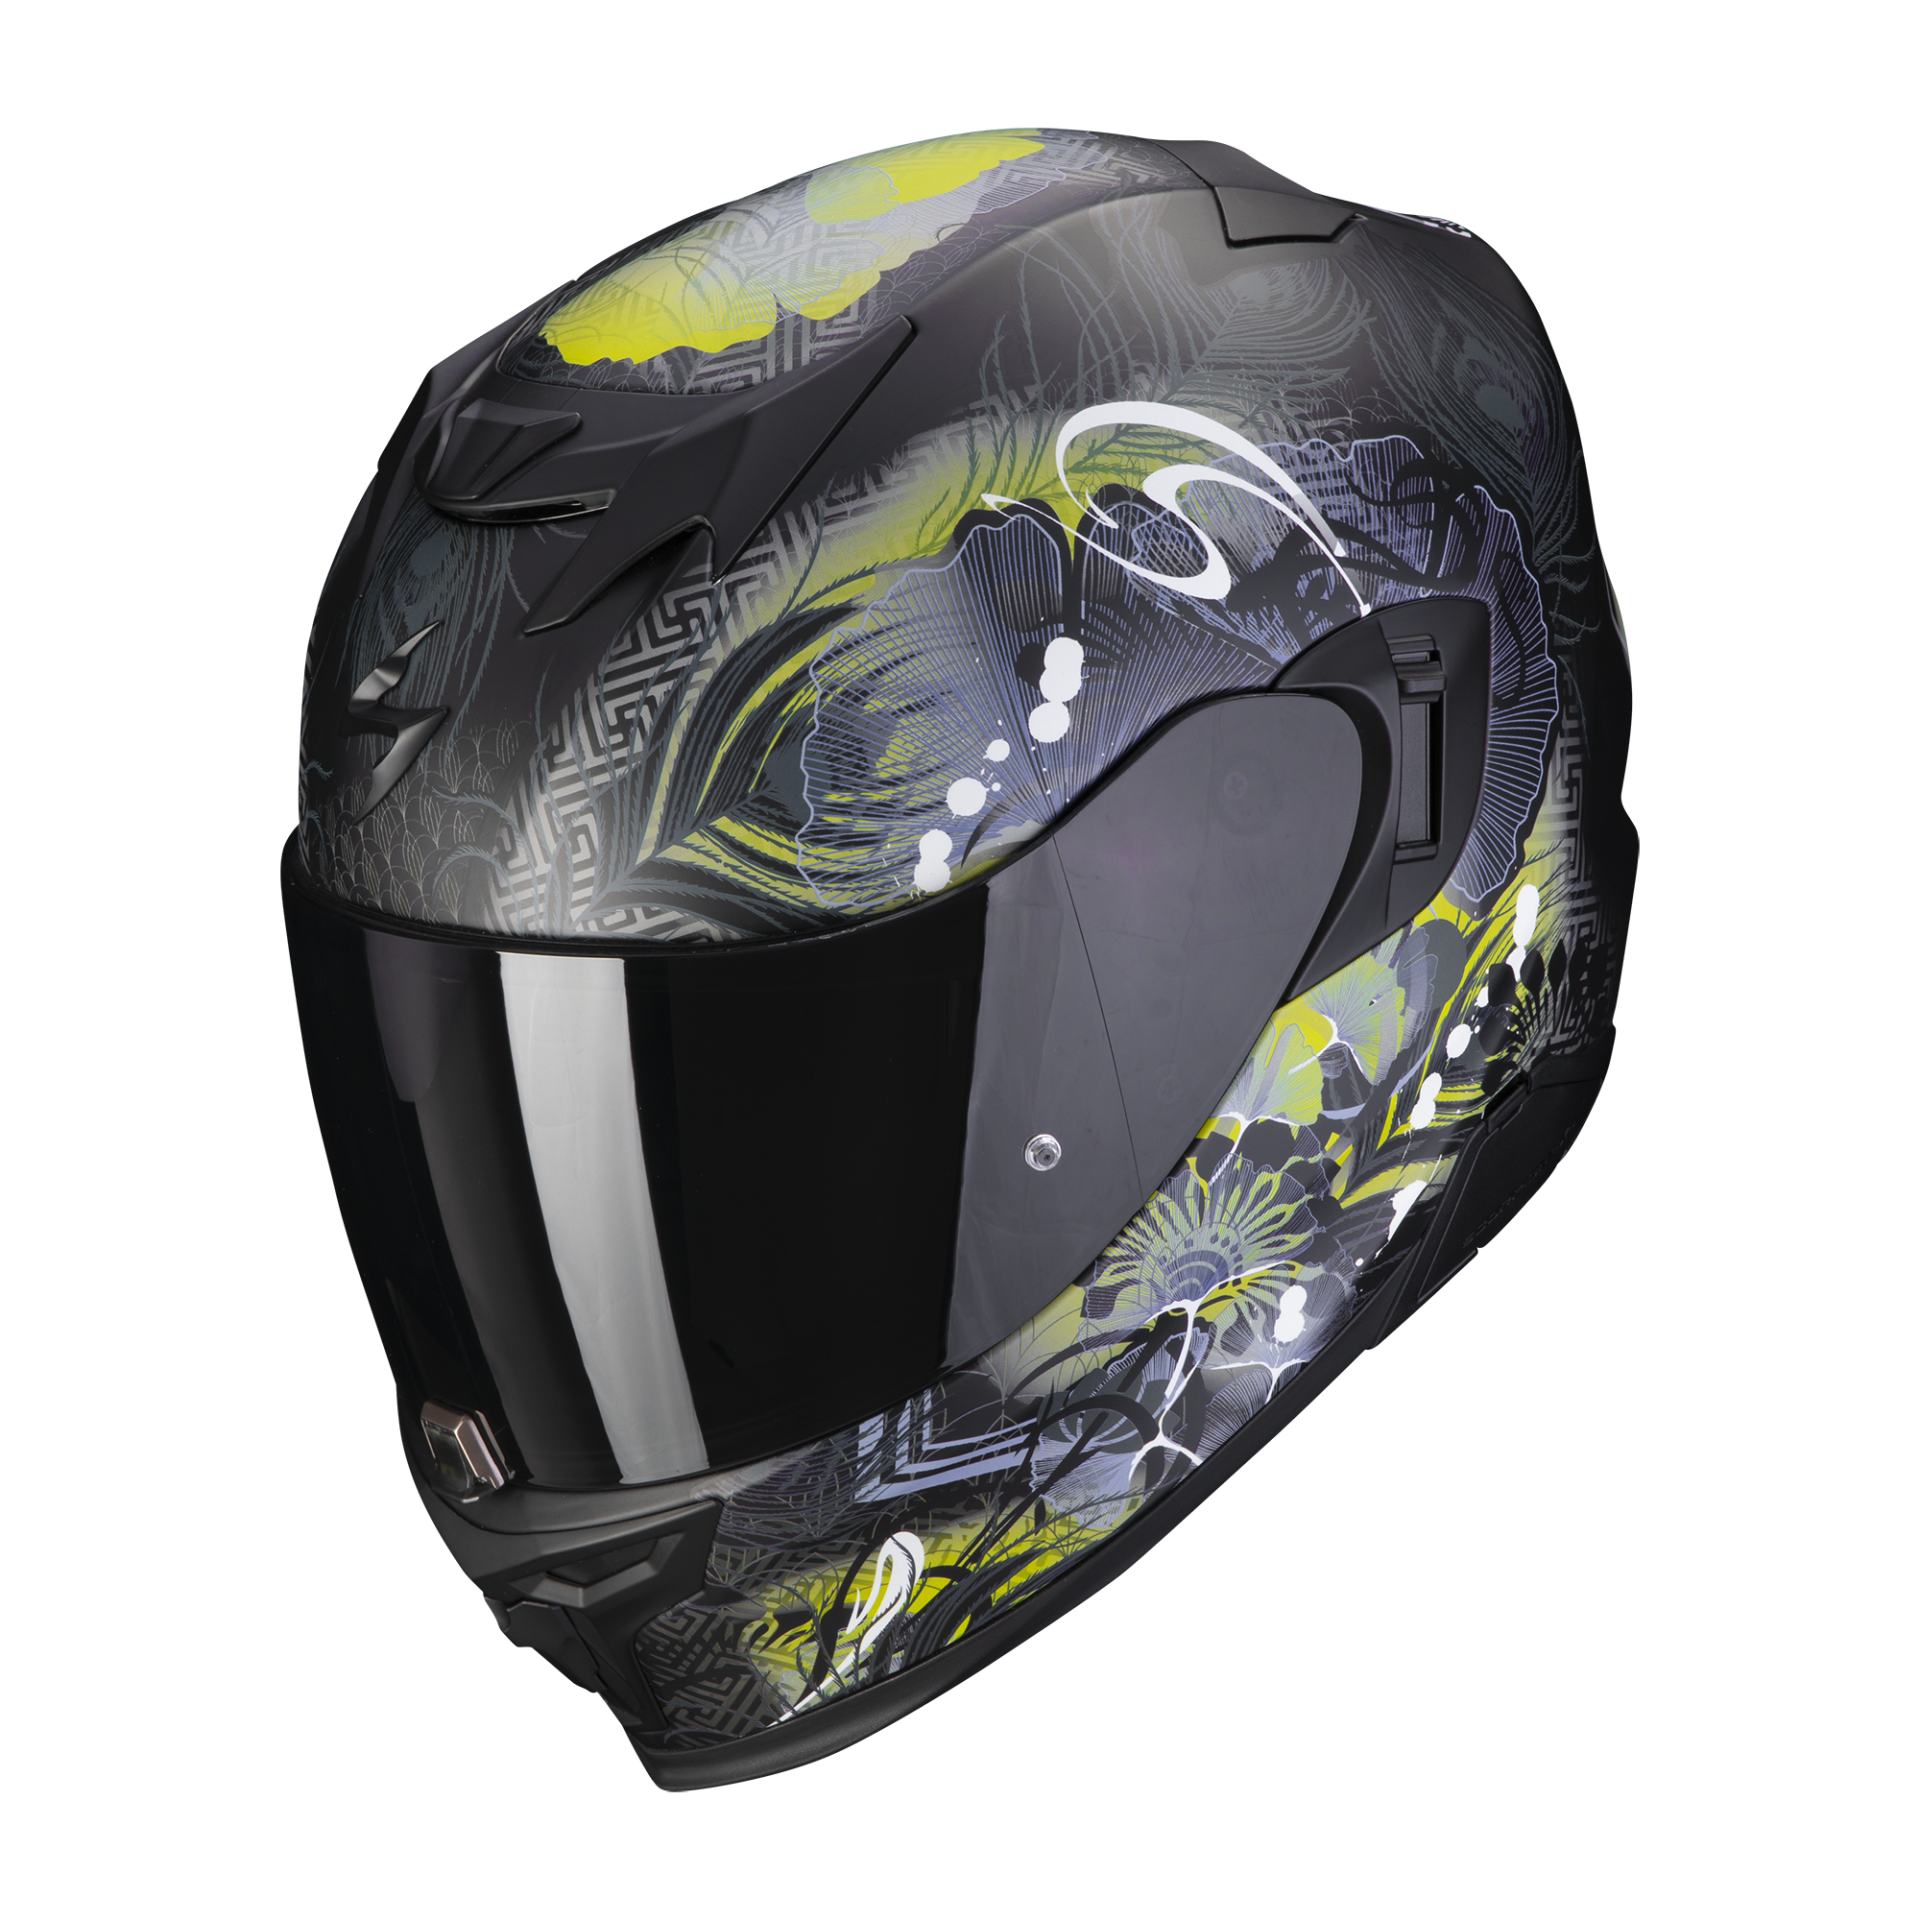 Image of Scorpion Exo-520 Evo Air Melrose Matt Black-Yellow Full Face Helmet Size XS EN